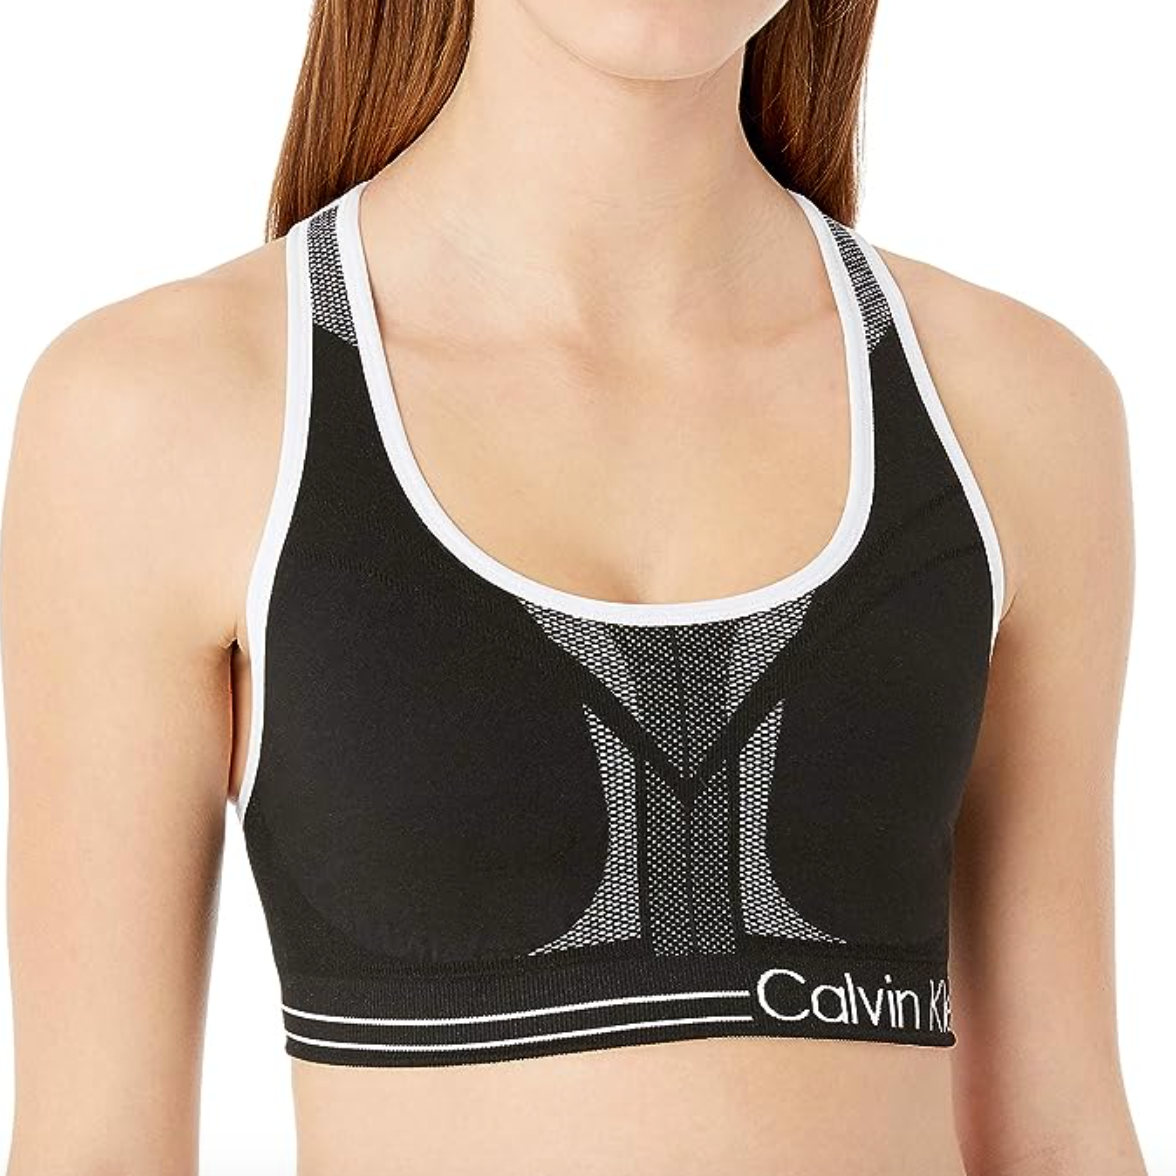 Calvin Klein, Intimates & Sleepwear, Medium Girls Calvin Klein Sports Bras